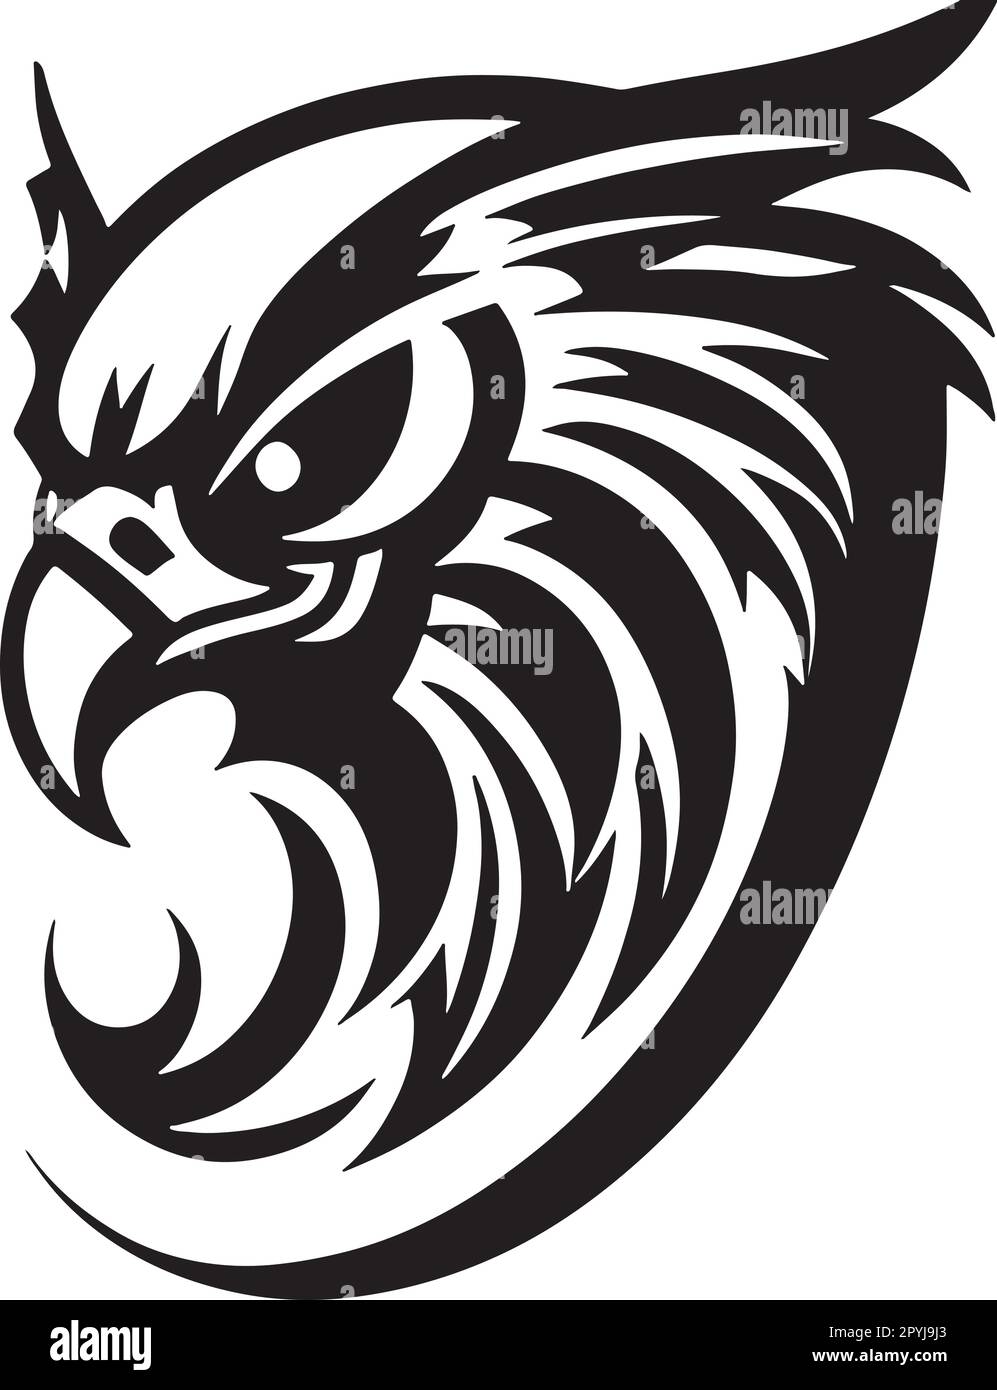 Super and powerful hawk emblem art vector Stock Vector